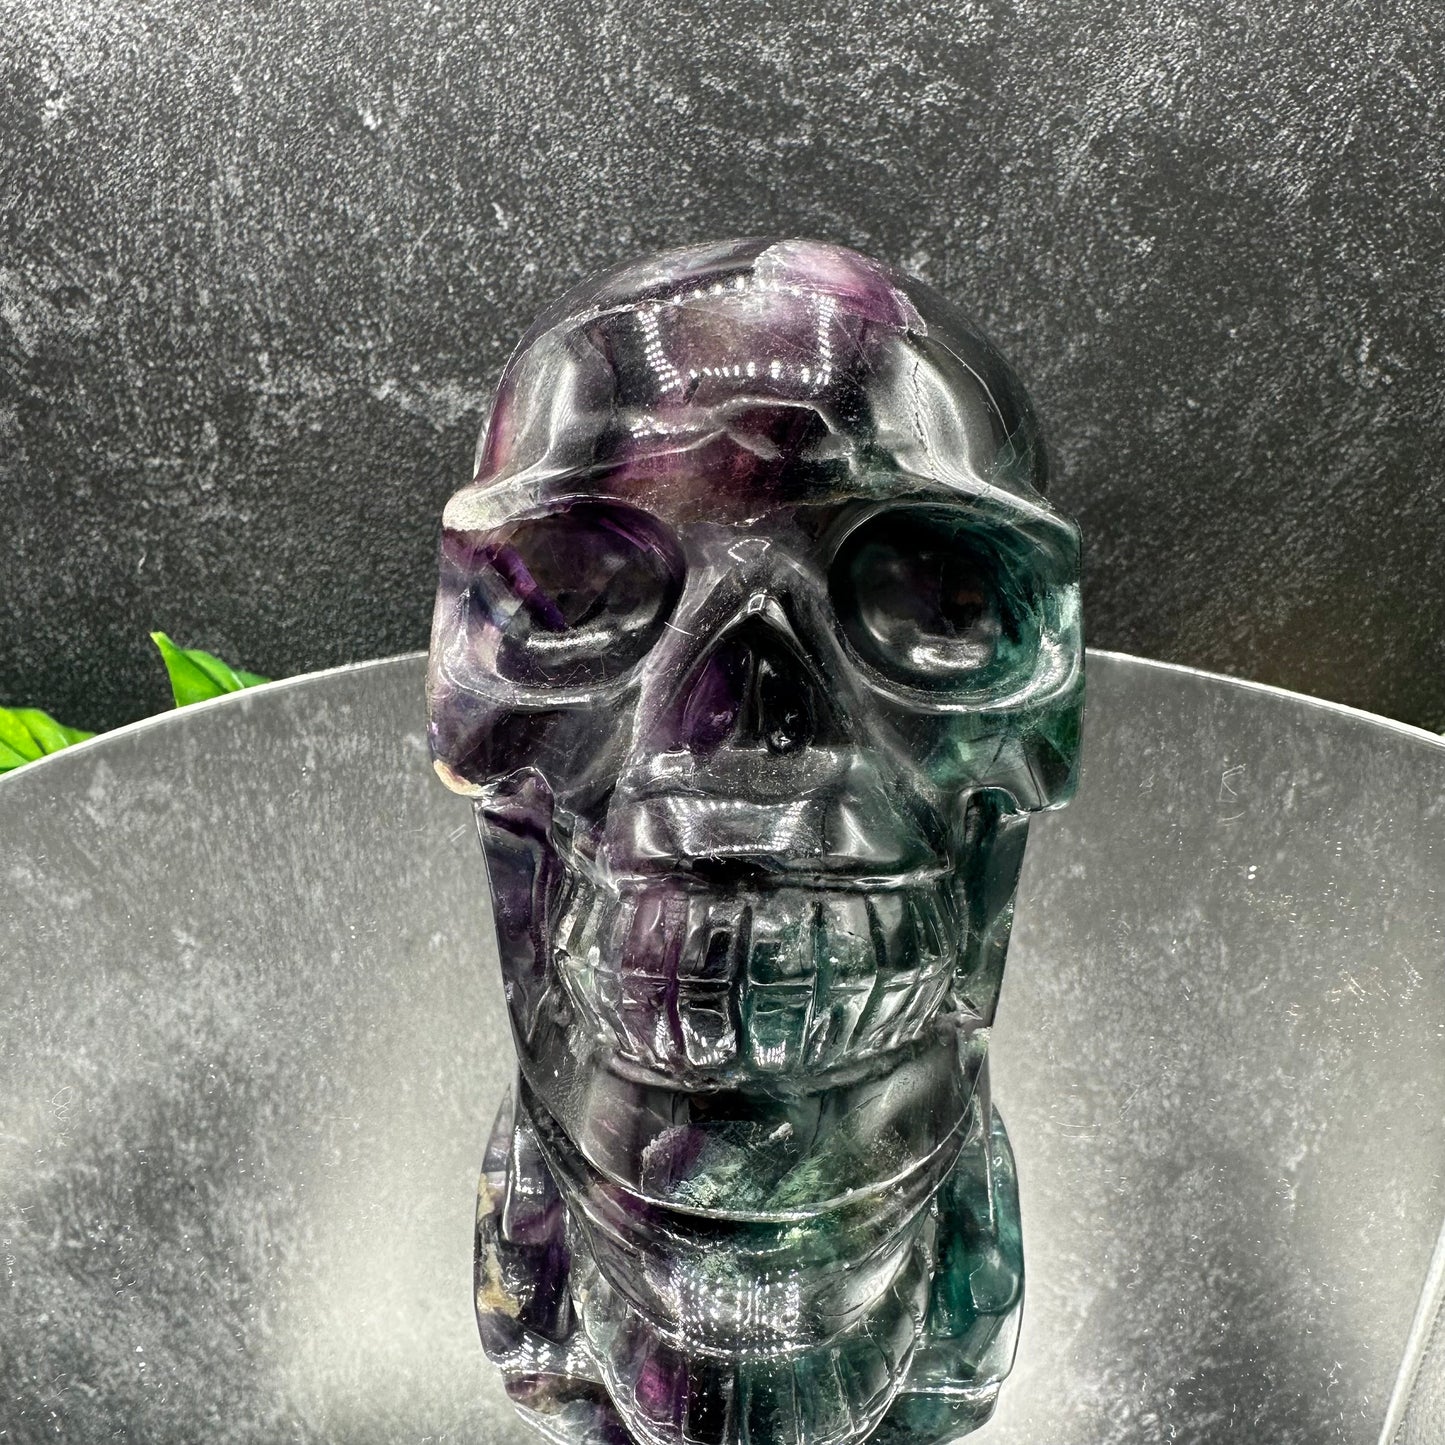 Rainbow Fluorite Skull with Matrix